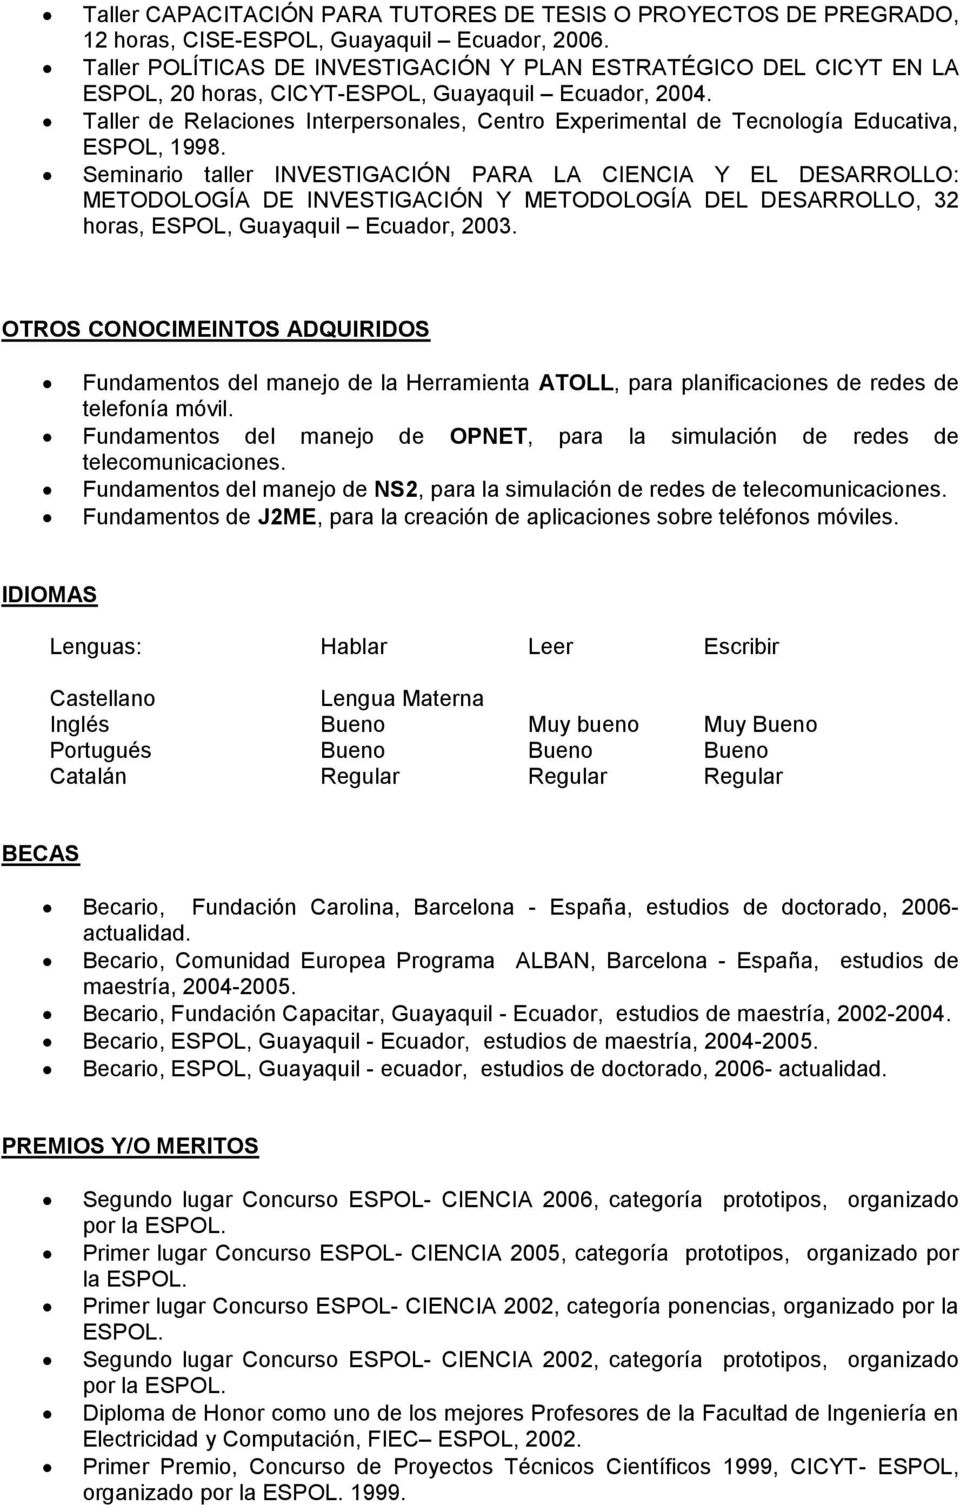 Taller de Relaciones Interpersonales, Centro Experimental de Tecnología Educativa, ESPOL, 1998.